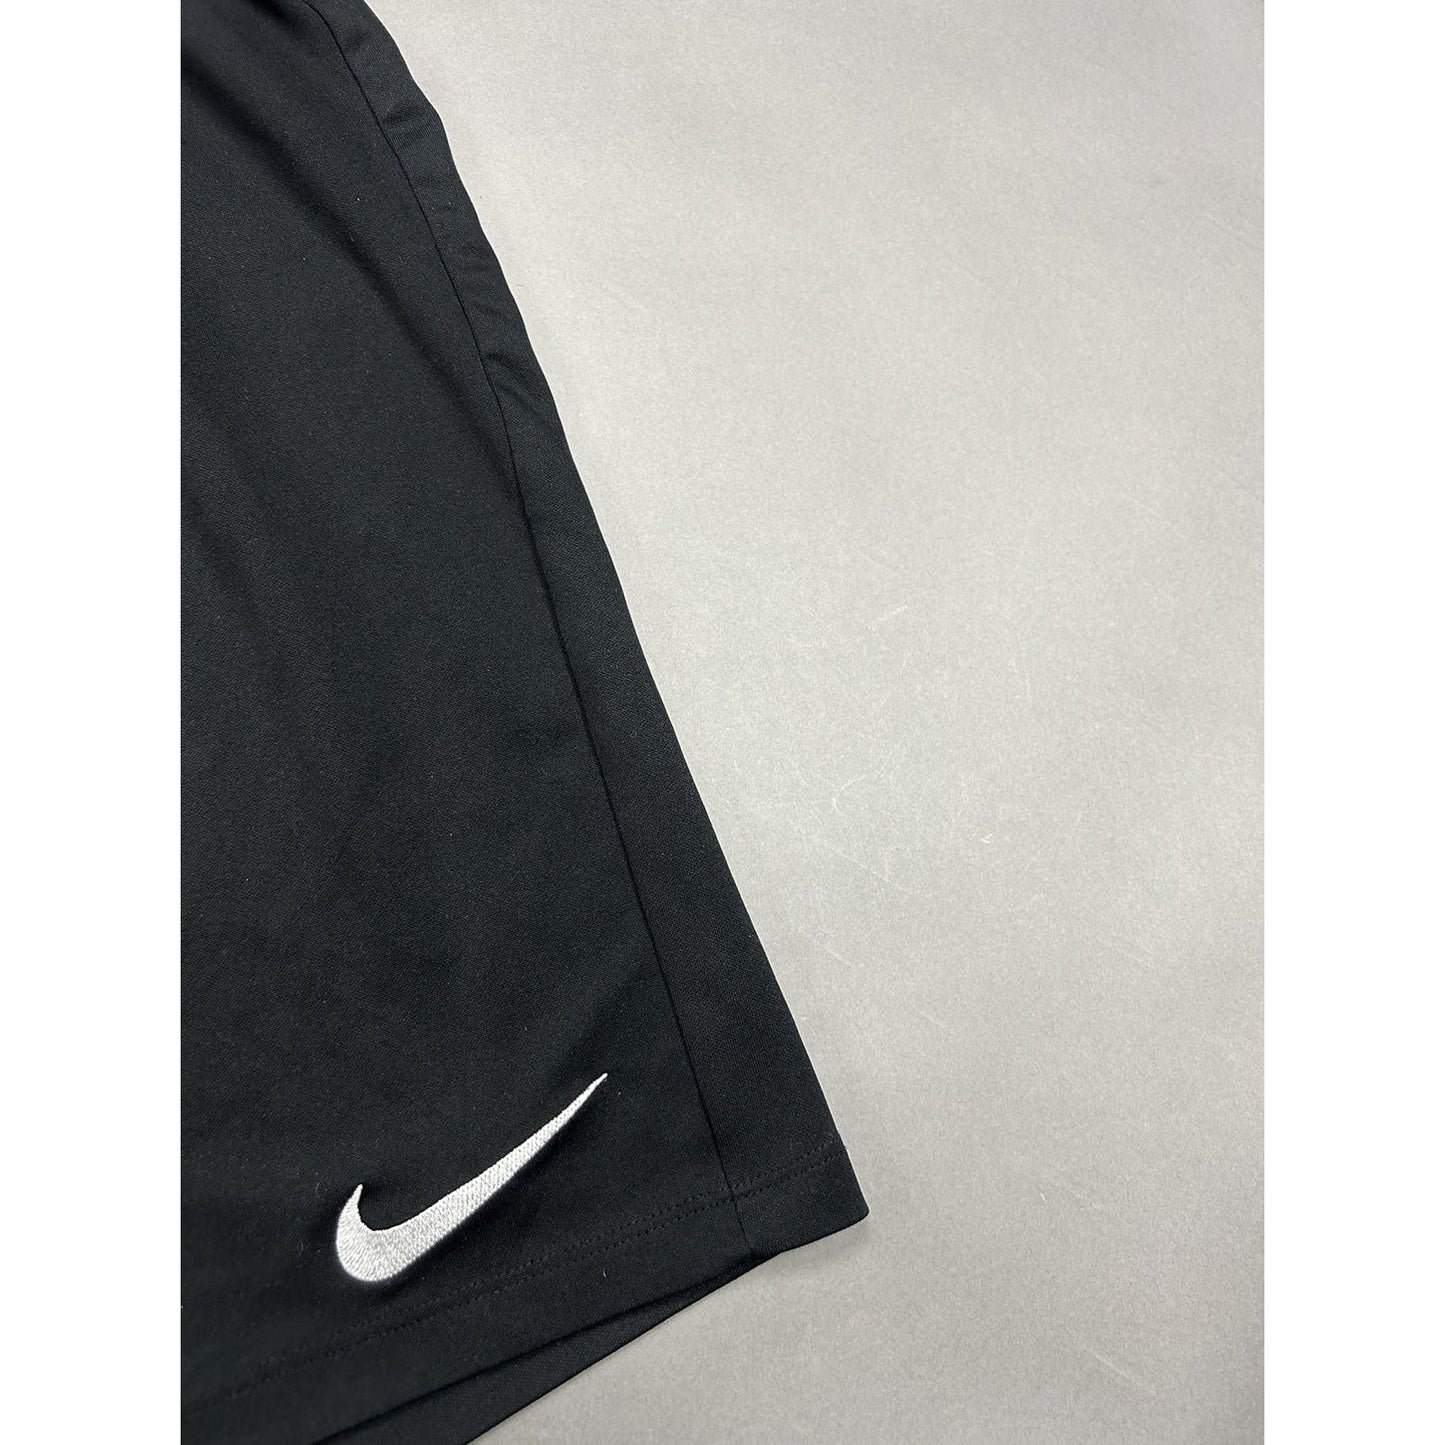 Nike vintage black shorts track pant small swoosh